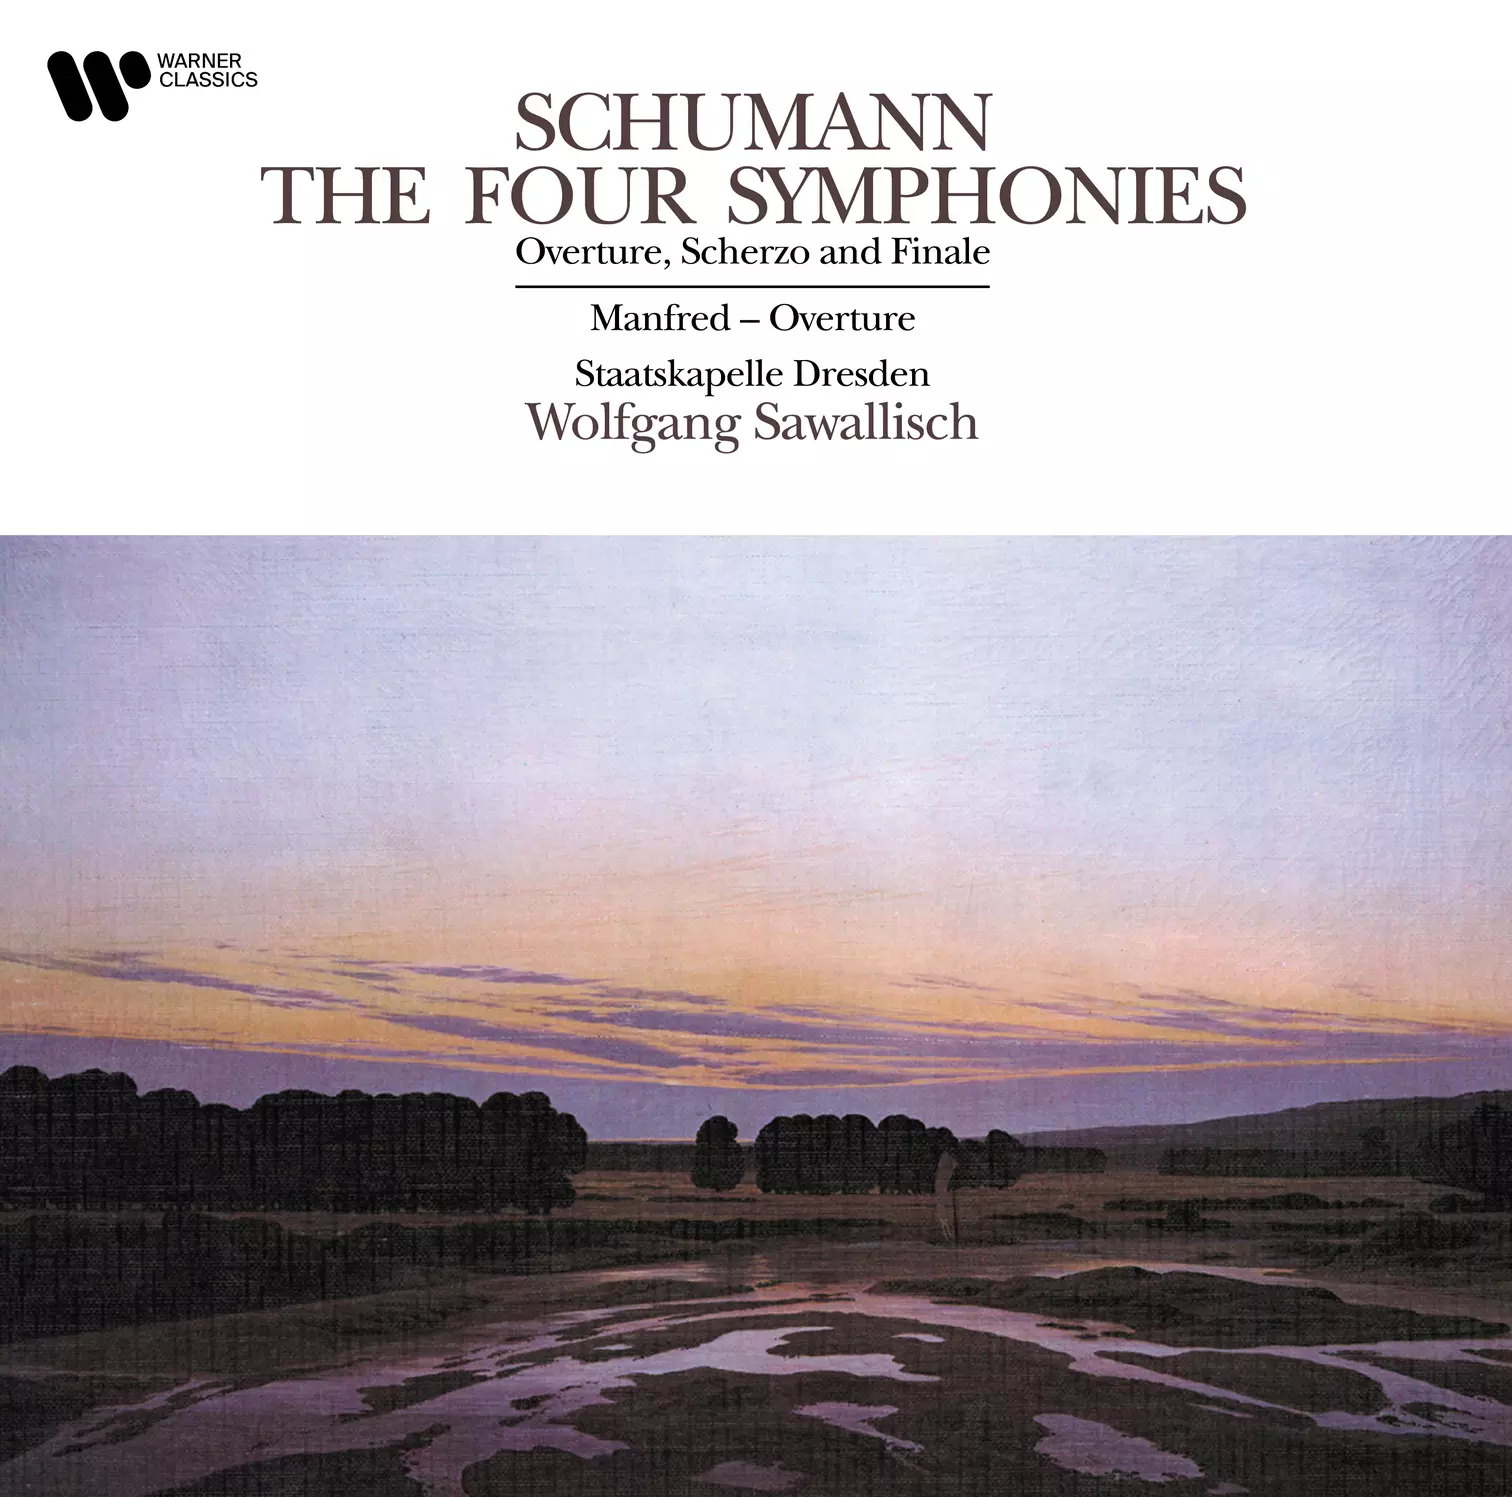 Schumann 4 symphonies LP Wolfgang Sawallisch